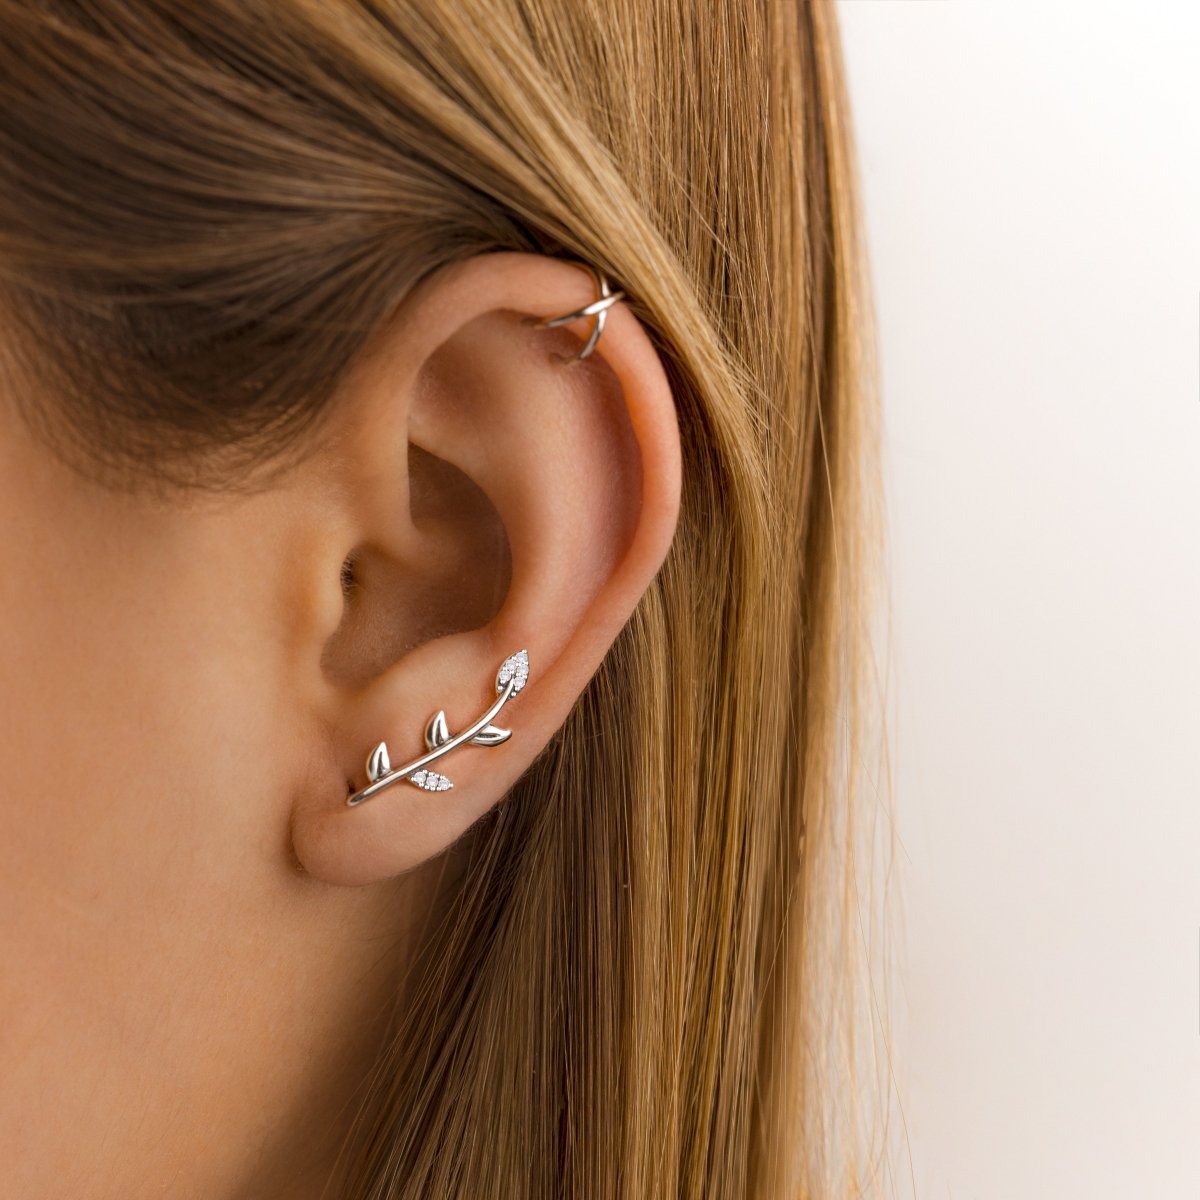 "Ear Cuff - U" Earrings - Milas Jewels Shop